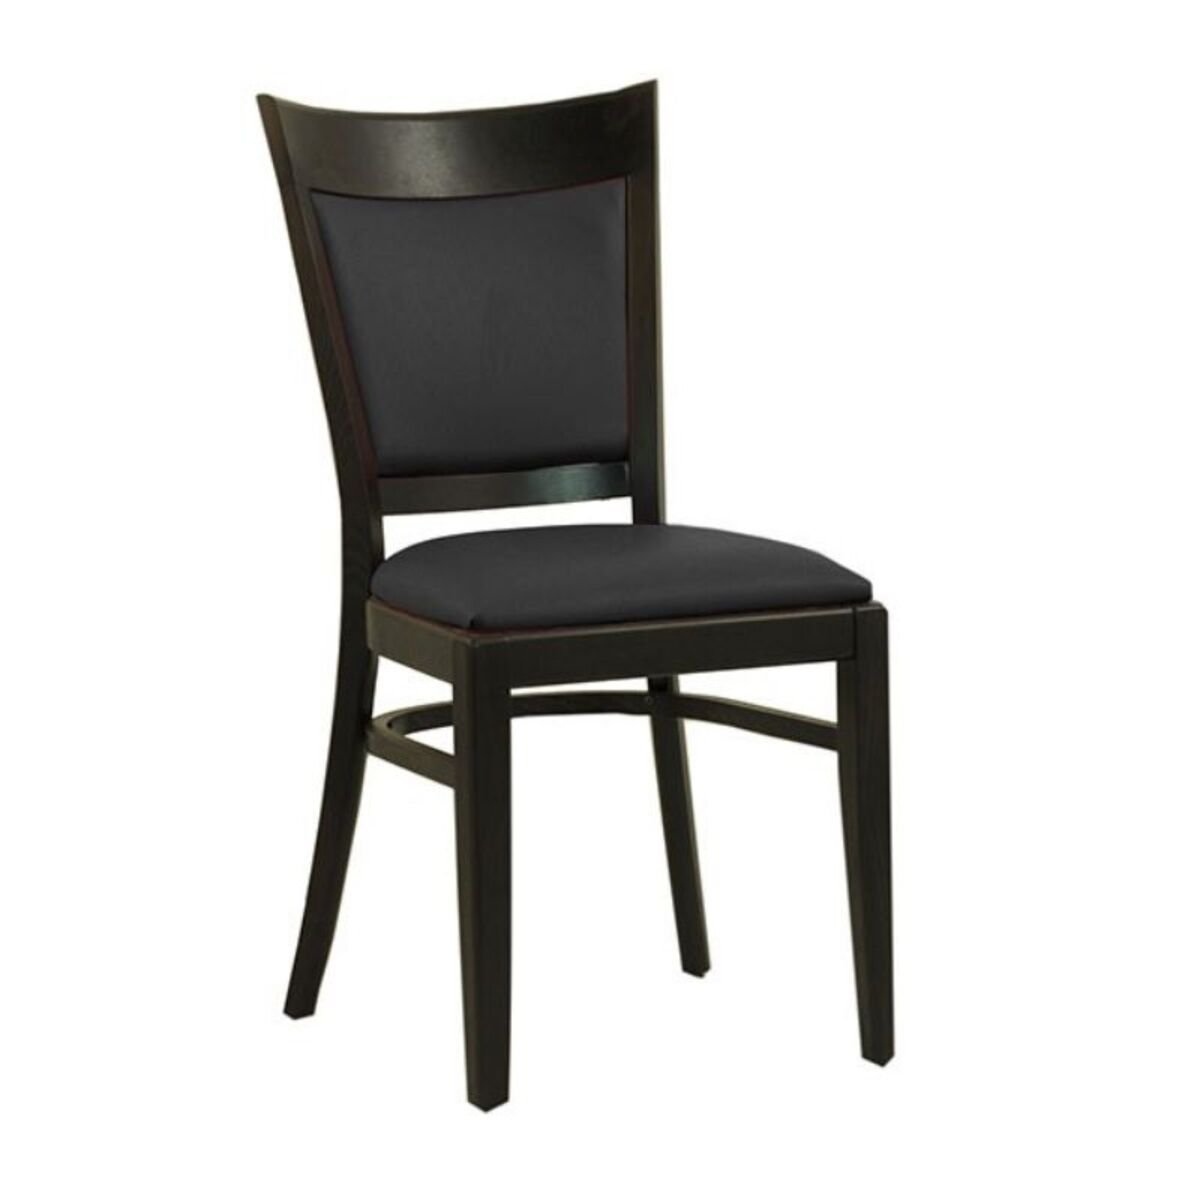 Chaise en bois avec assise et dossier rembourrés en simili cuir coloris noir